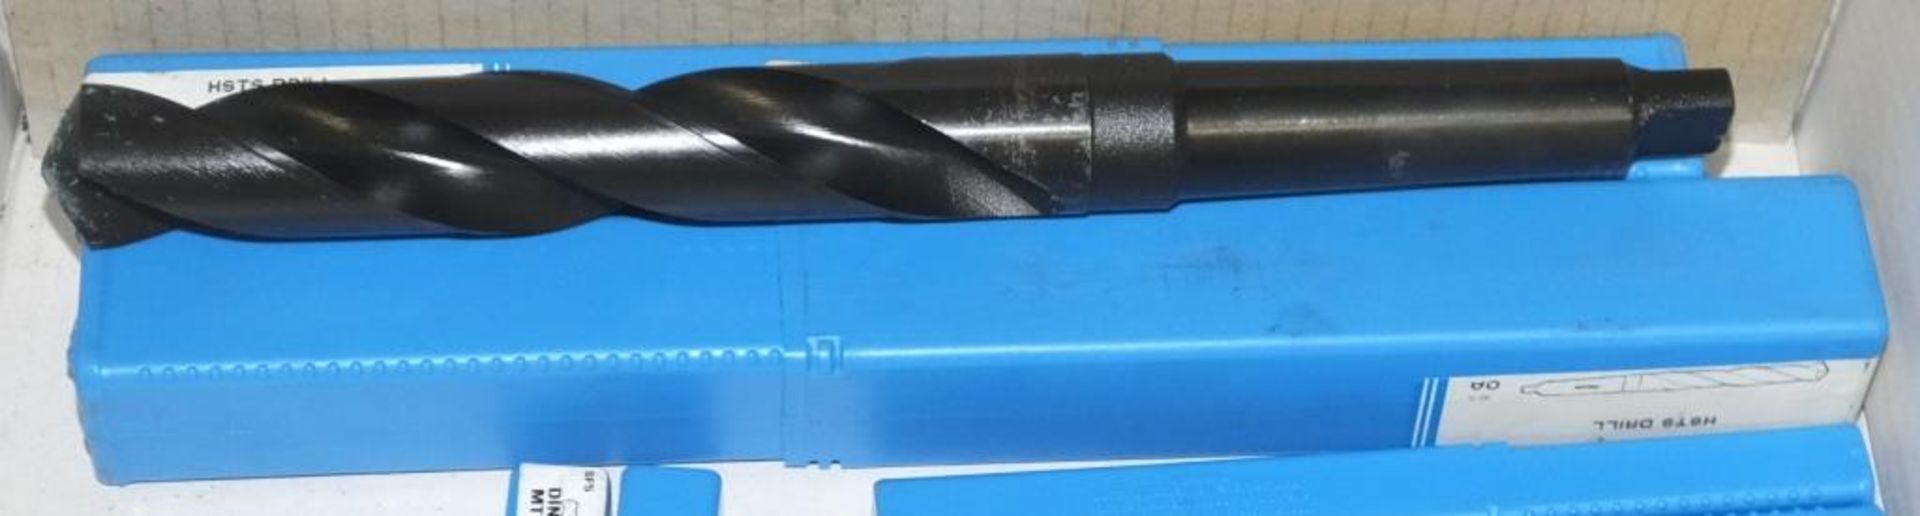 Presto Morse Taper Drill bits - 13x DIN 345RN 10.80mm, 2x HSTS Drill bits 28.00mm - Image 2 of 4